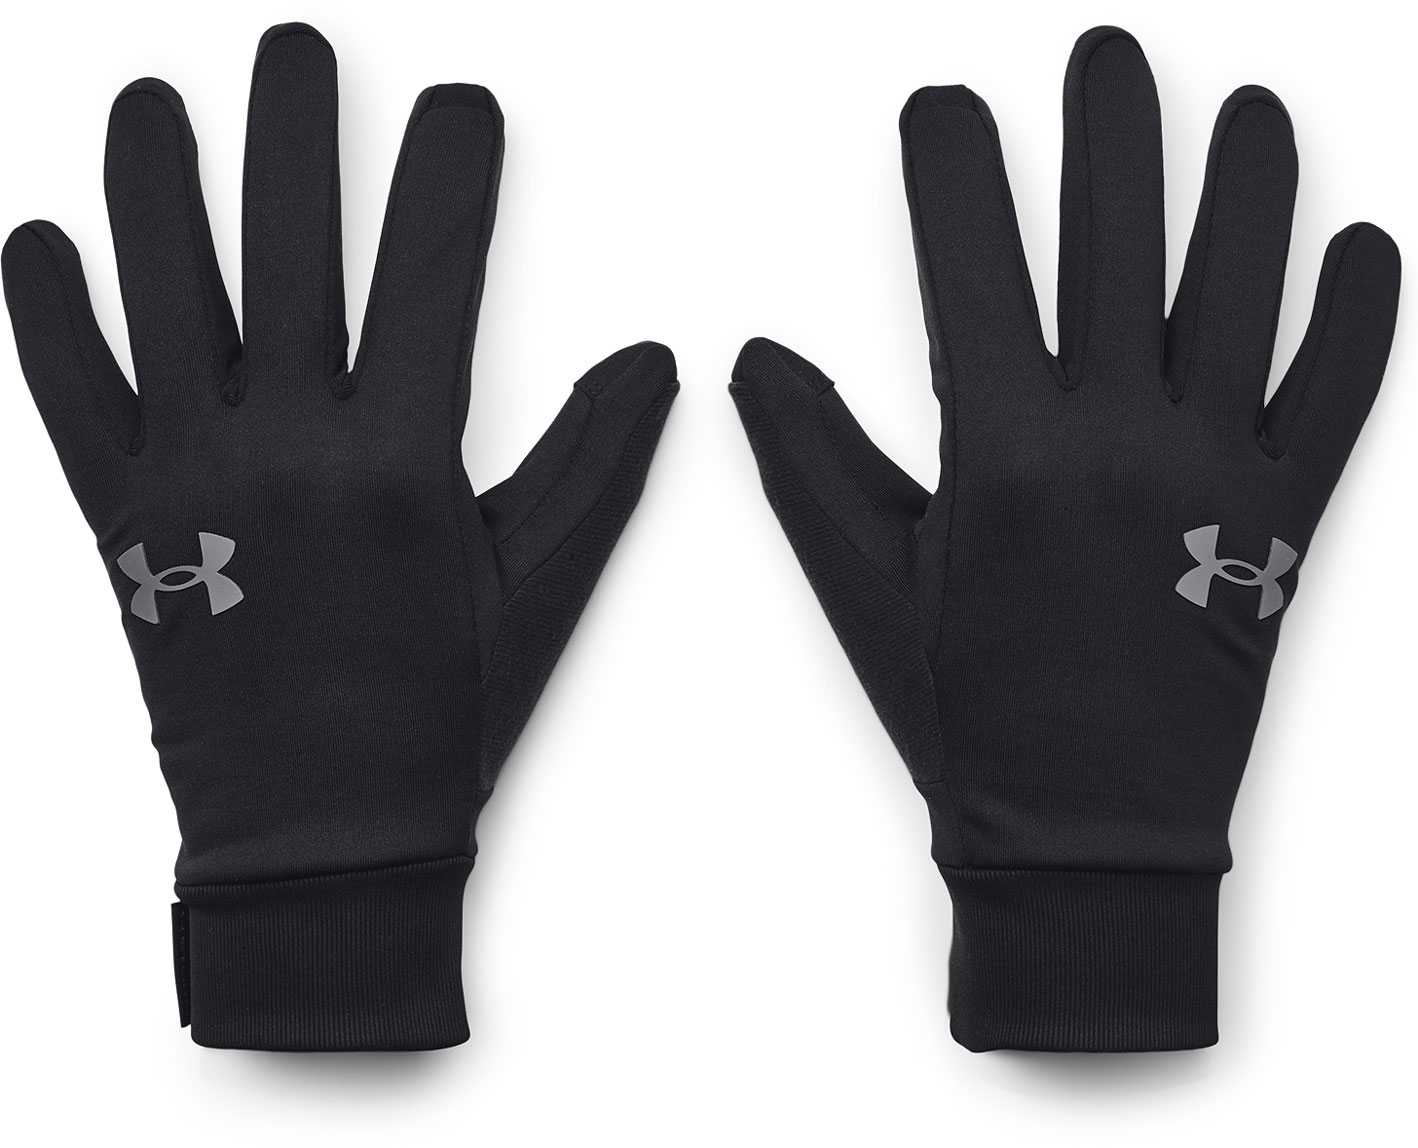 Men's gloves